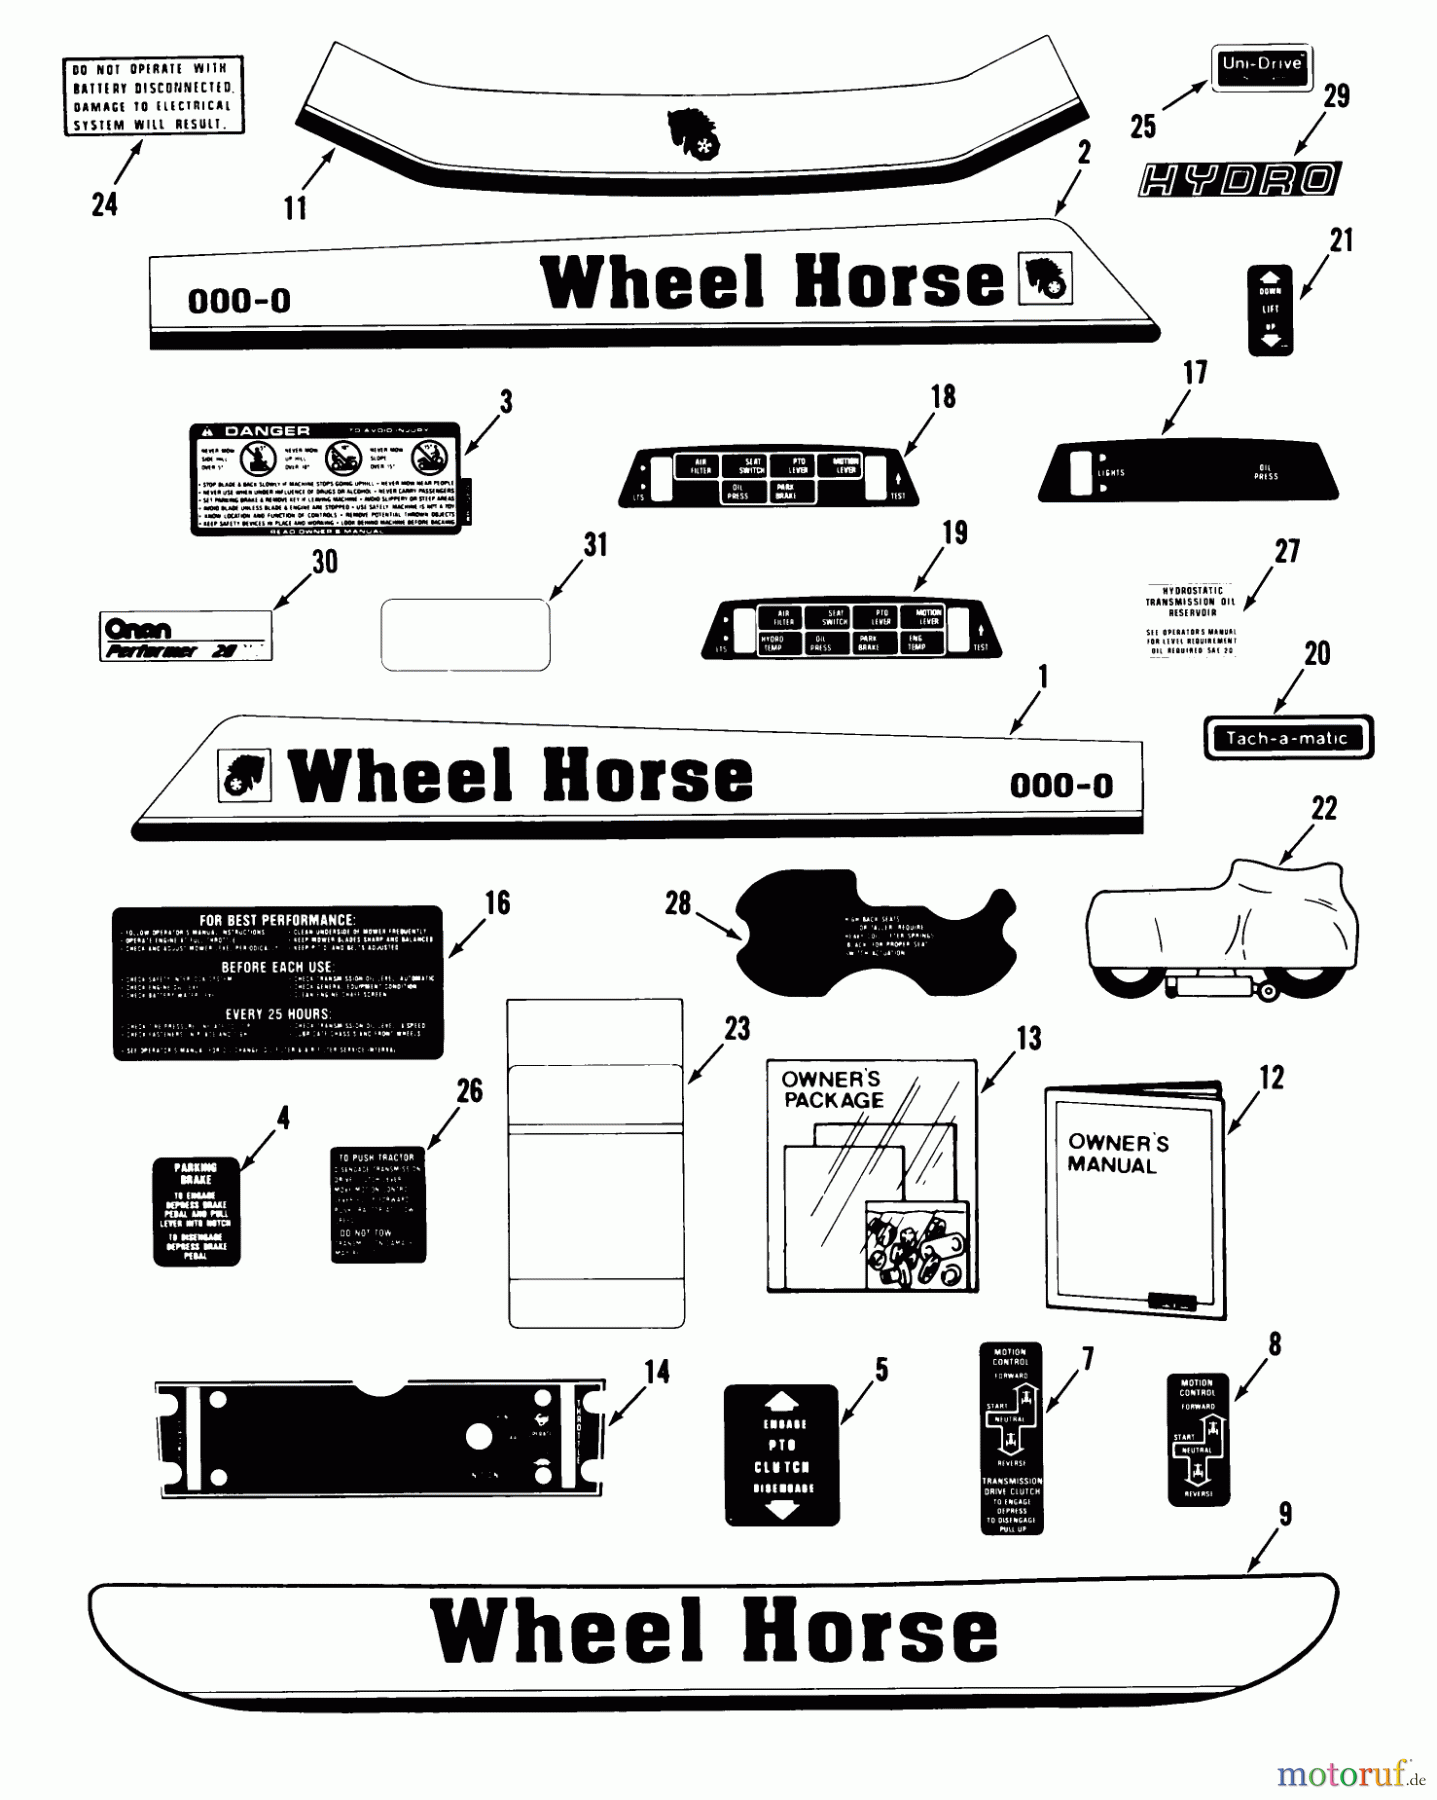  Toro Neu Mowers, Lawn & Garden Tractor Seite 1 31-18OE01 (518-H) - Toro 518-H Garden Tractor, 1988 DECALS